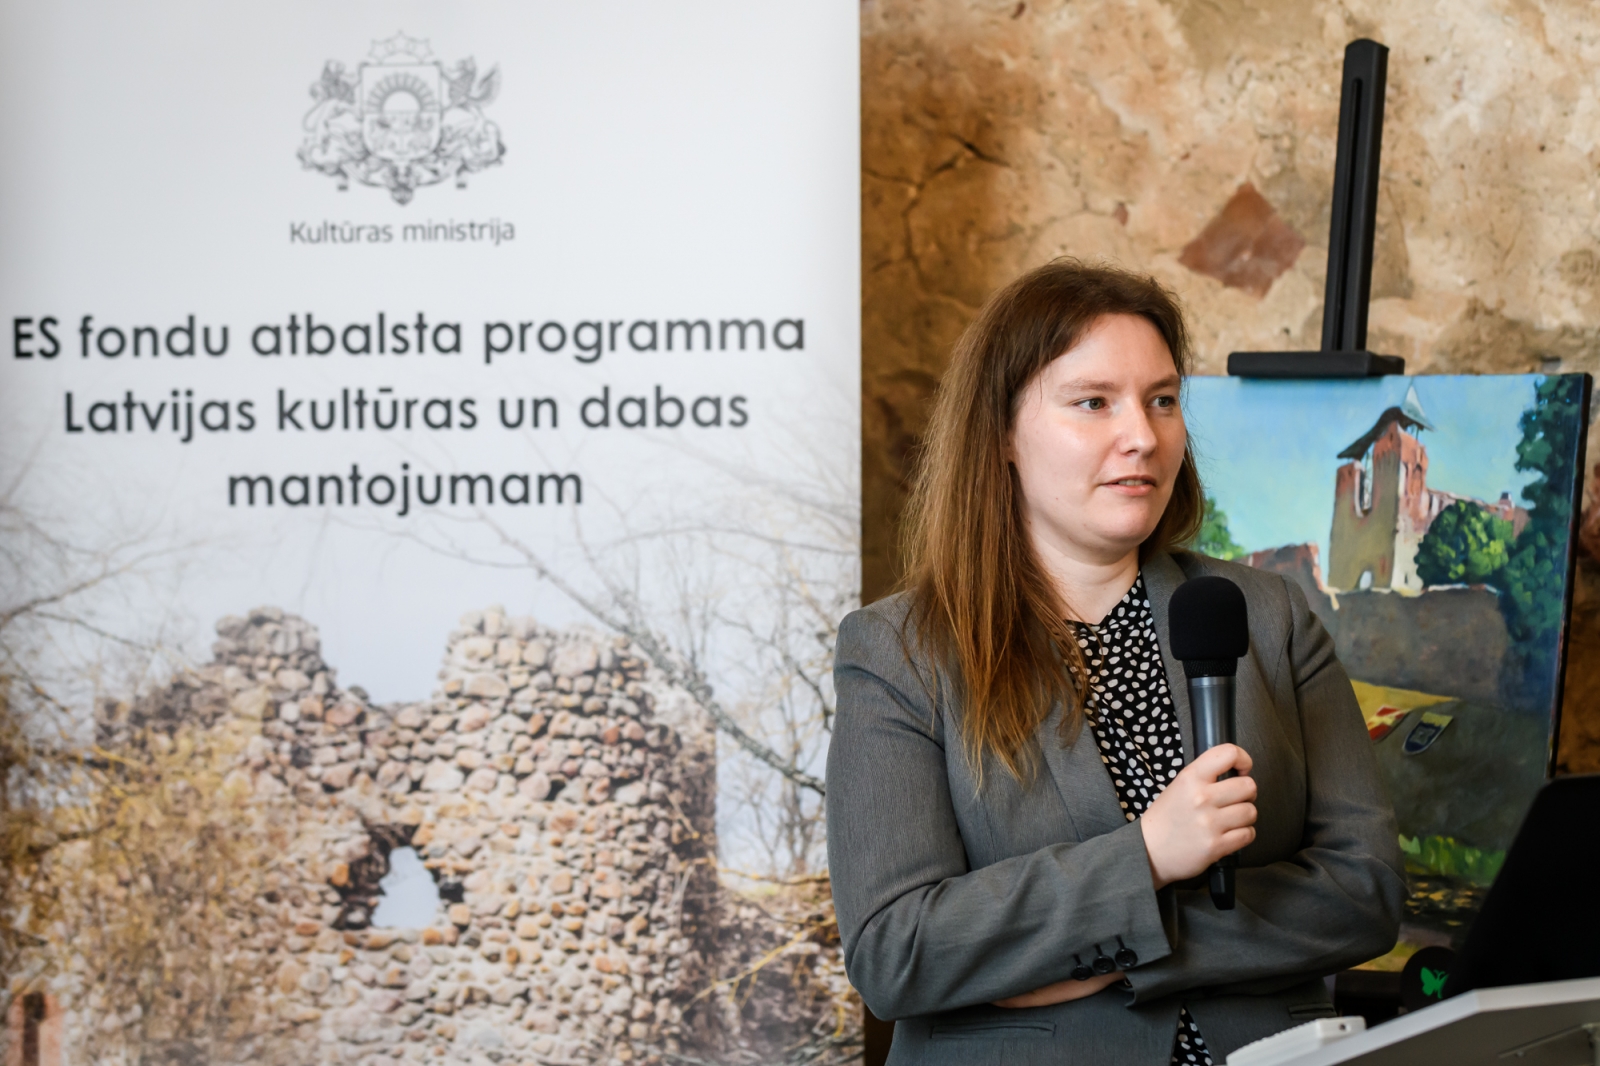 Konference "Atrastā Latvija - 60 kultūras un dabas mantojuma veiksmes stāsti"